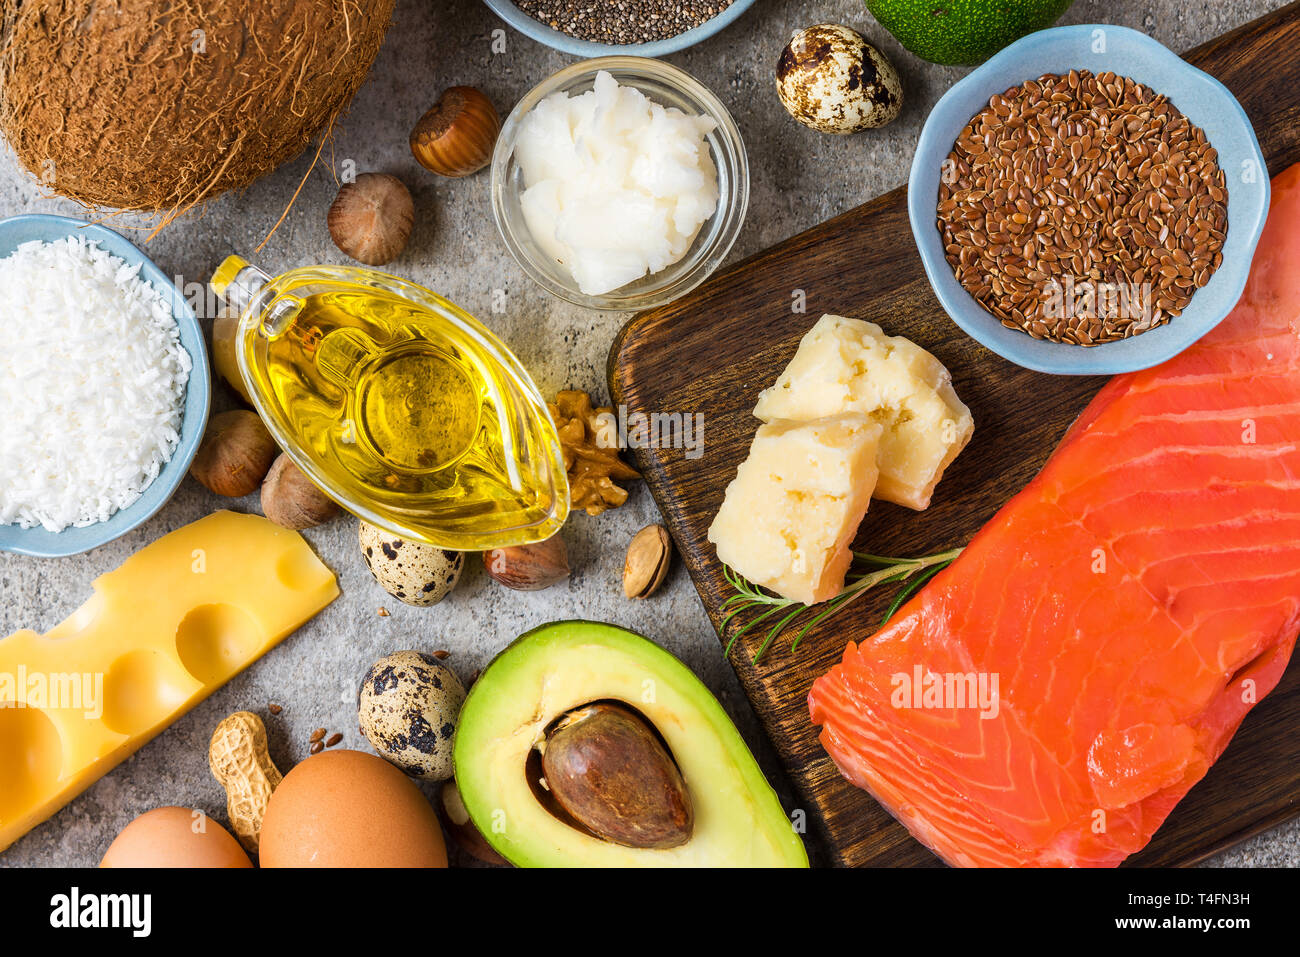 Selección de grasas buenas y fuentes de omega 3. Concepto de alimentación saludable. Dieta cetogï¿½ica vista superior. Foto de stock